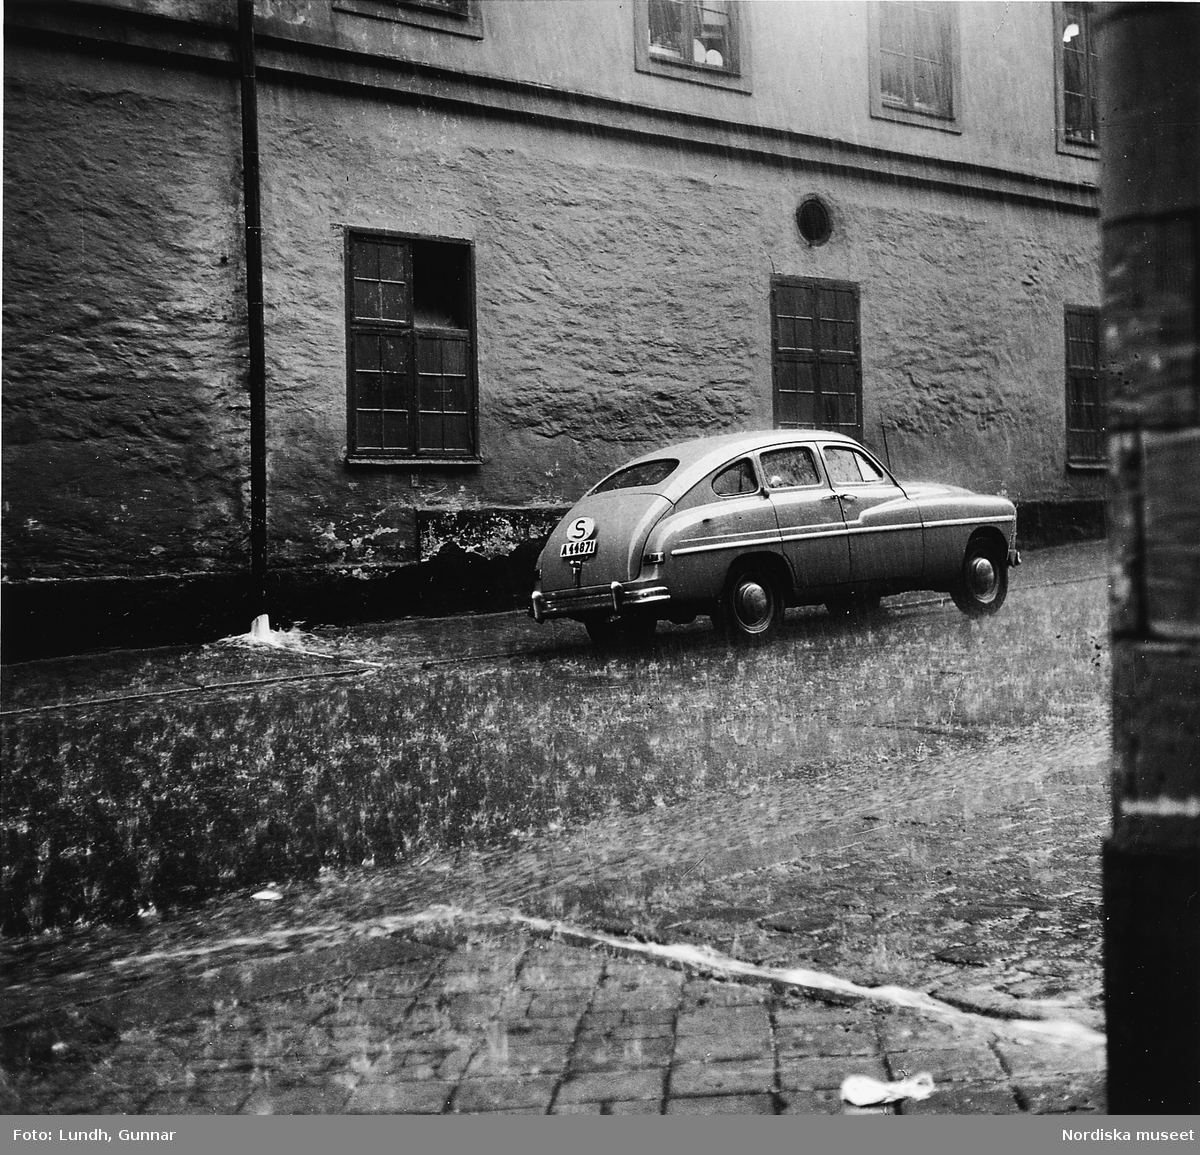 Kraftigt regn på en stadsgata, en Ford Vedette står parkerad.